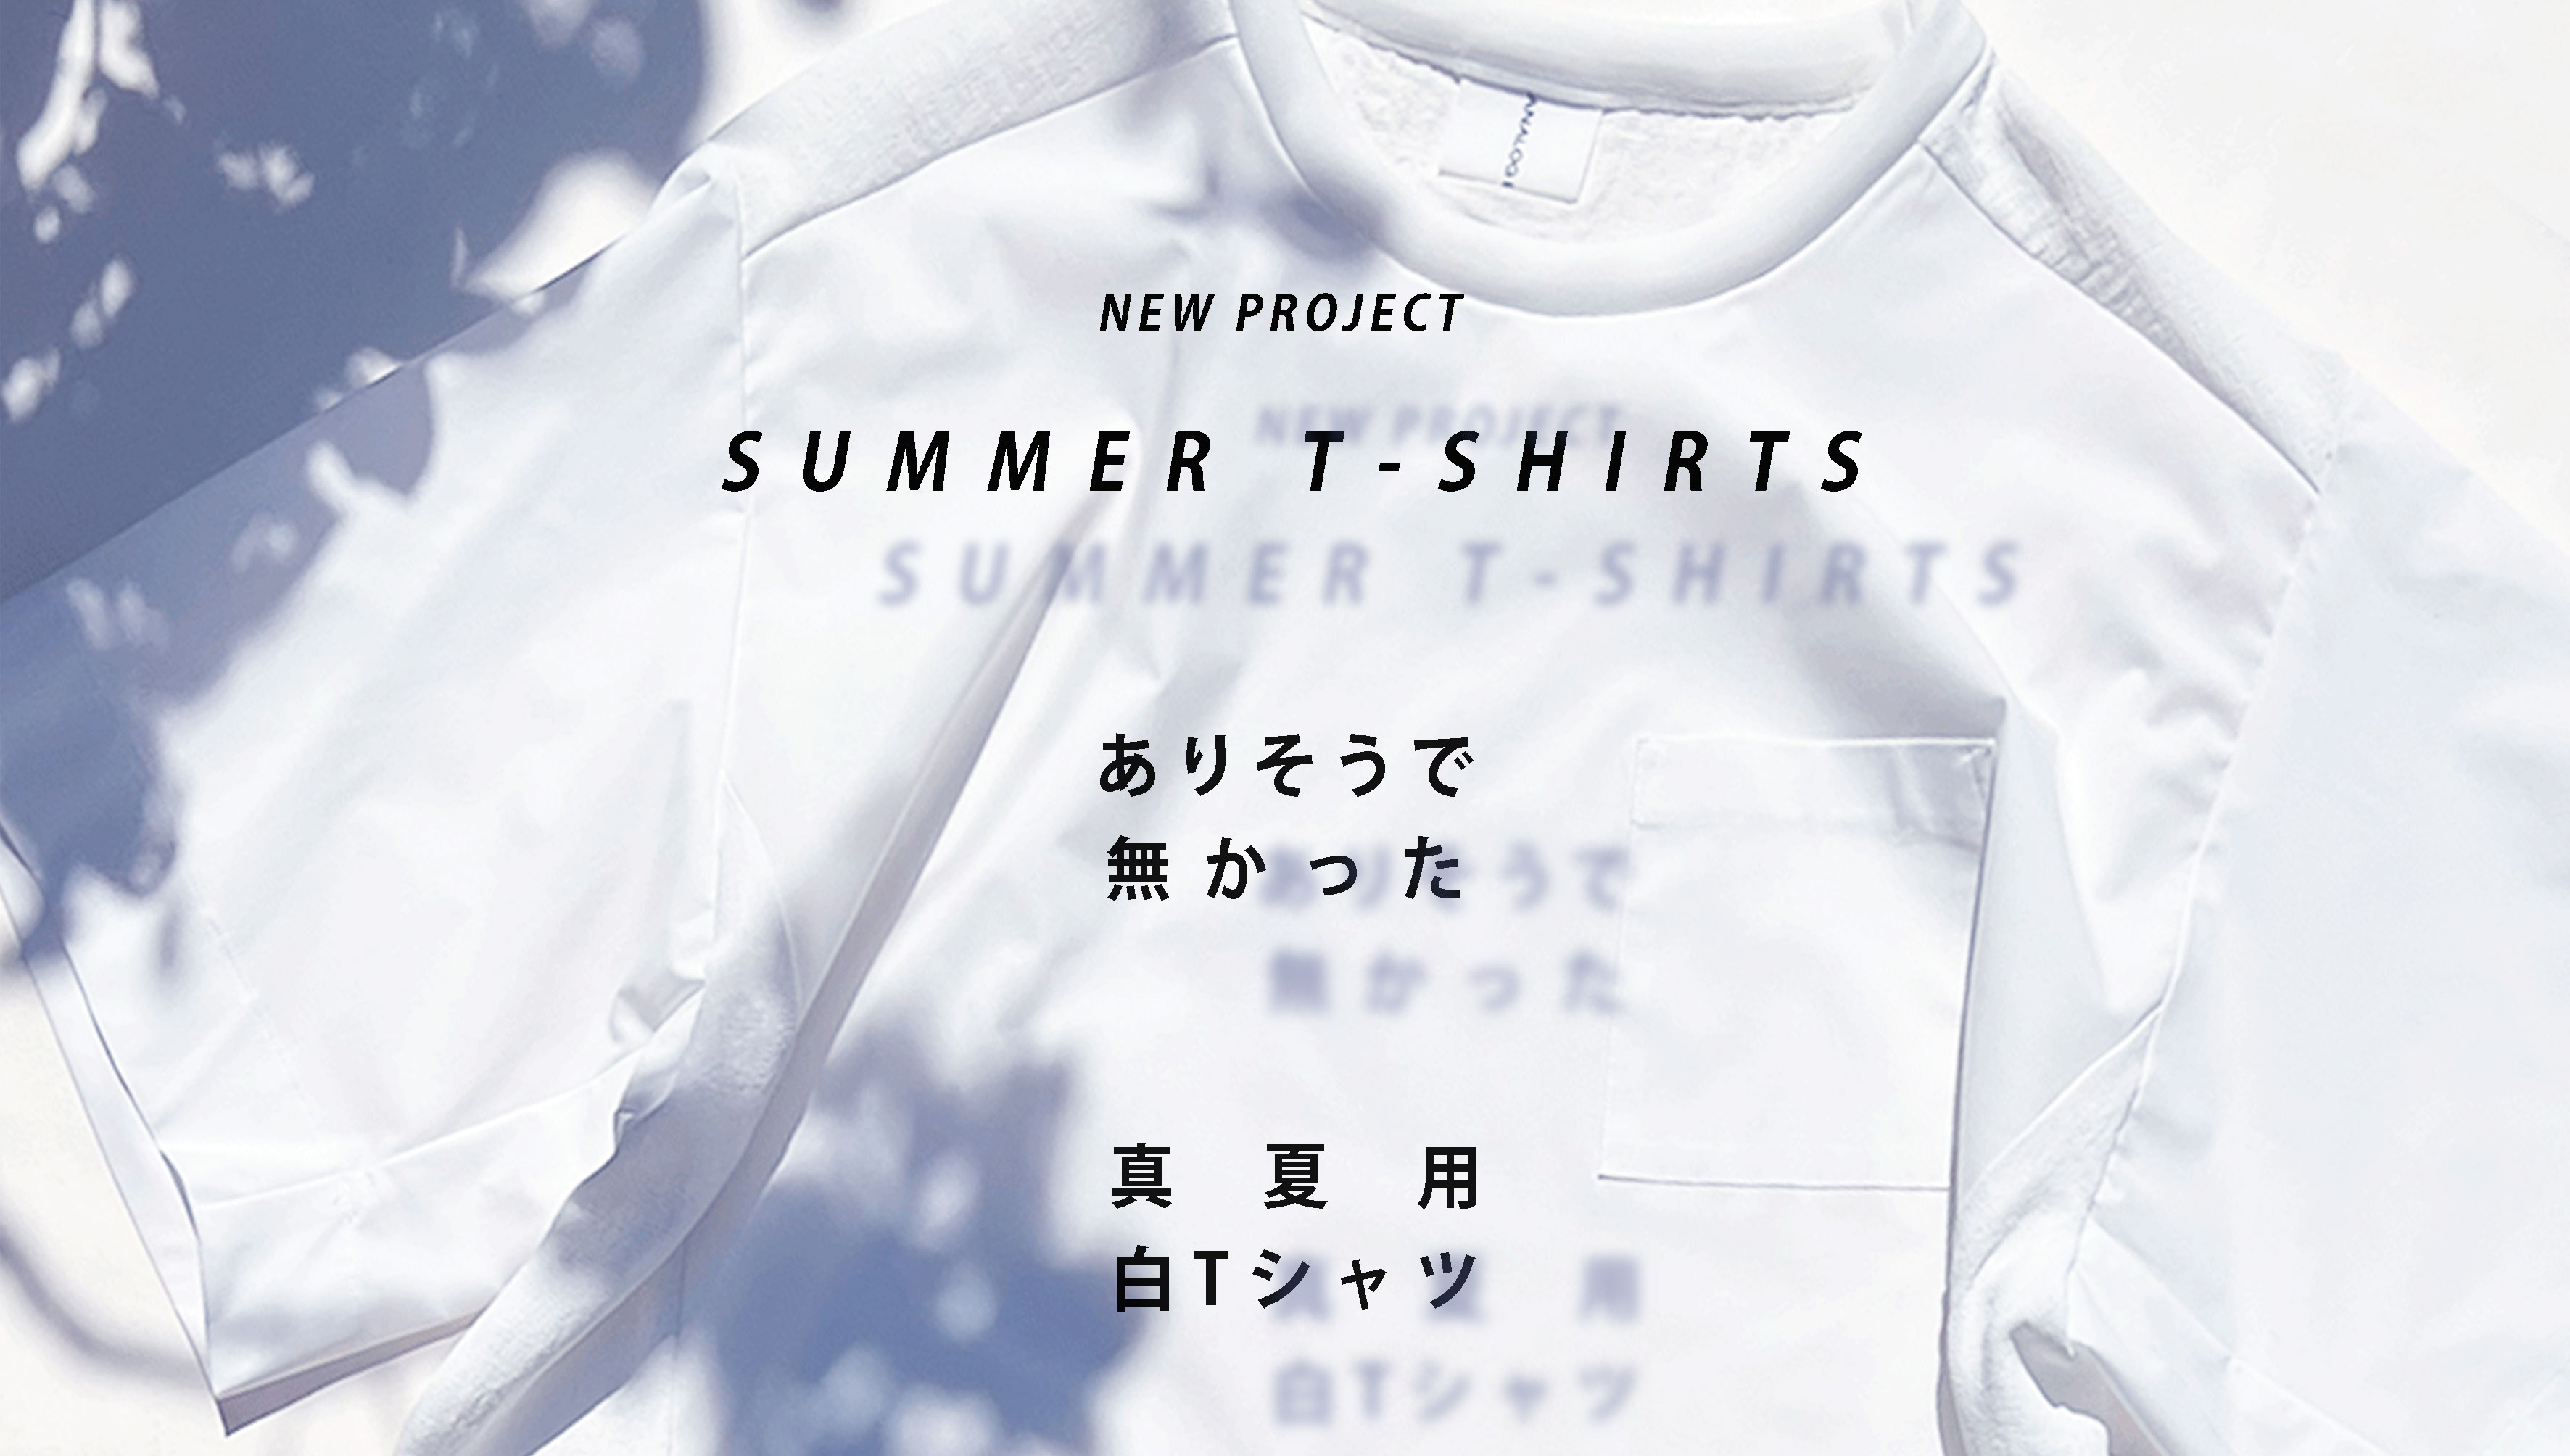 ー 真夏用Tシャツ『シャツT』いよいよ 公開！ ー